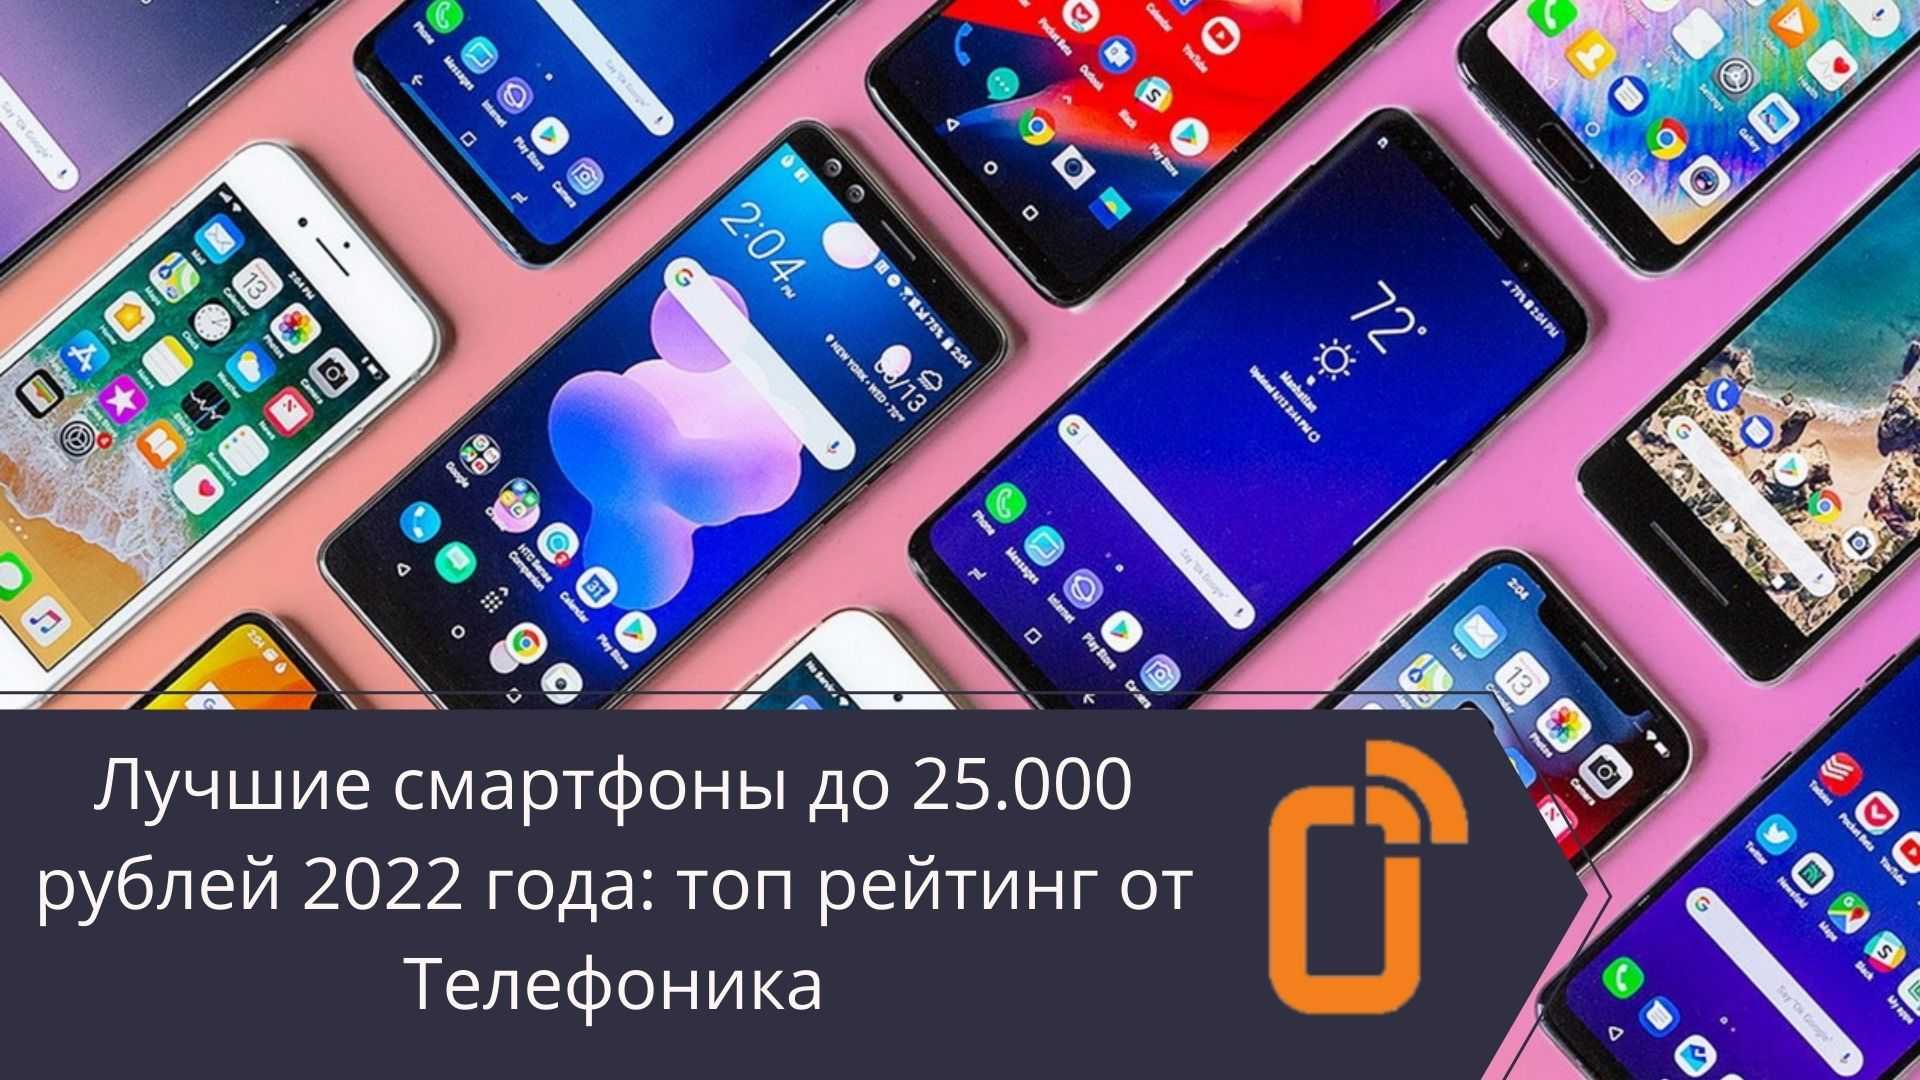 Топ 10 лучших смартфонов до 15000 рублей - рейтинг 2021 -2022 года | экспертные руководства по выбору техники